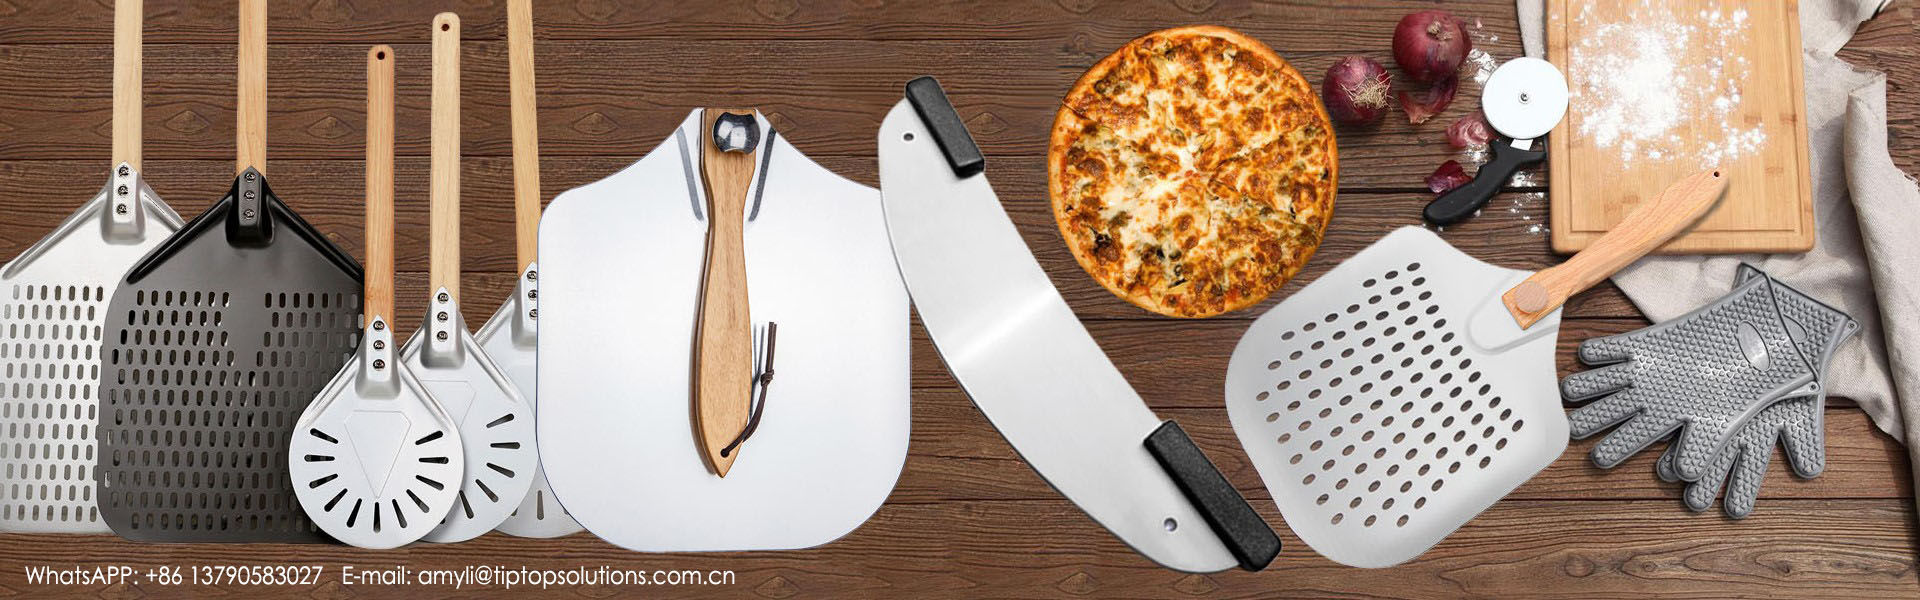 craiceann pizza, cutter pizza, uirlisí oigheann,TIPTOP SOLUTIONS CO.,LIMITED